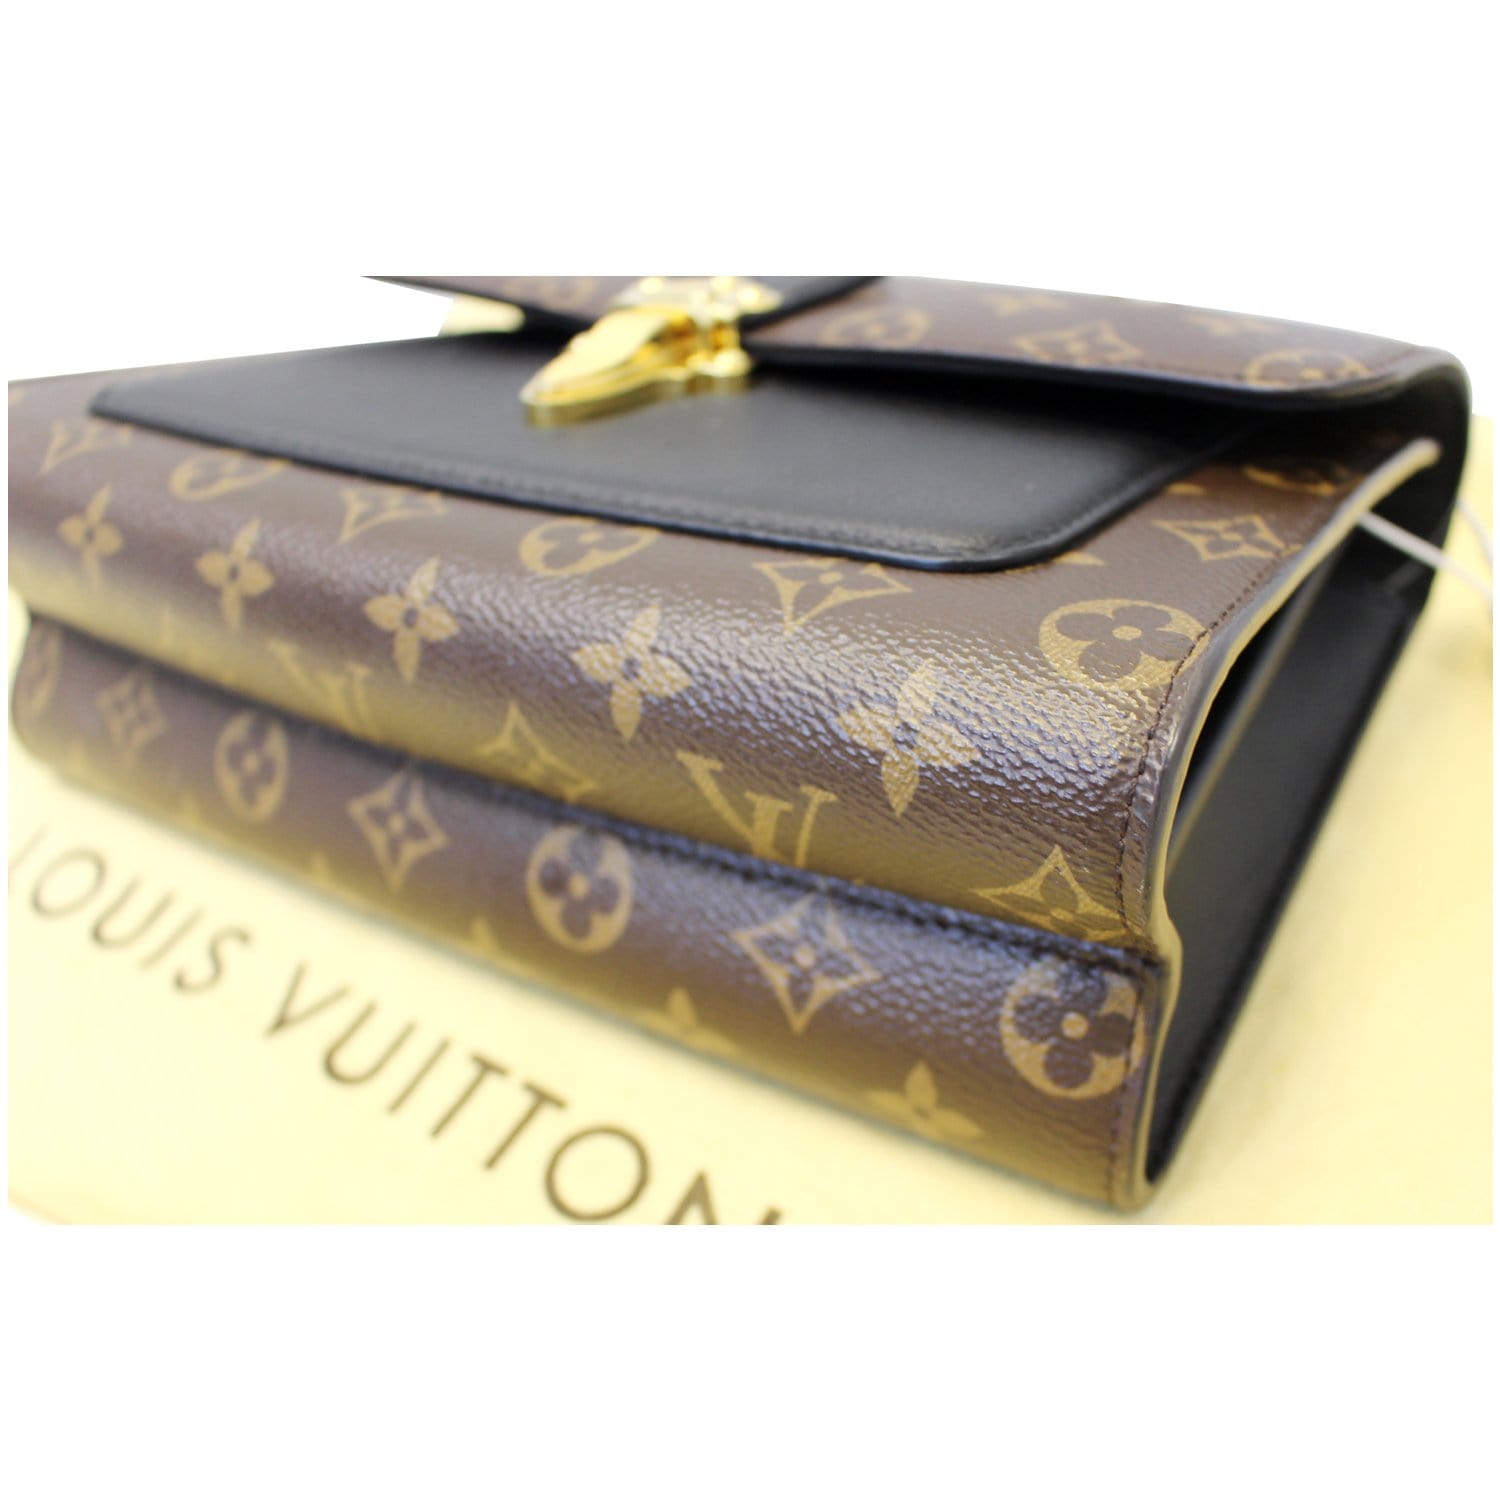 Louis Vuitton Victoire Shoulder bag 353296